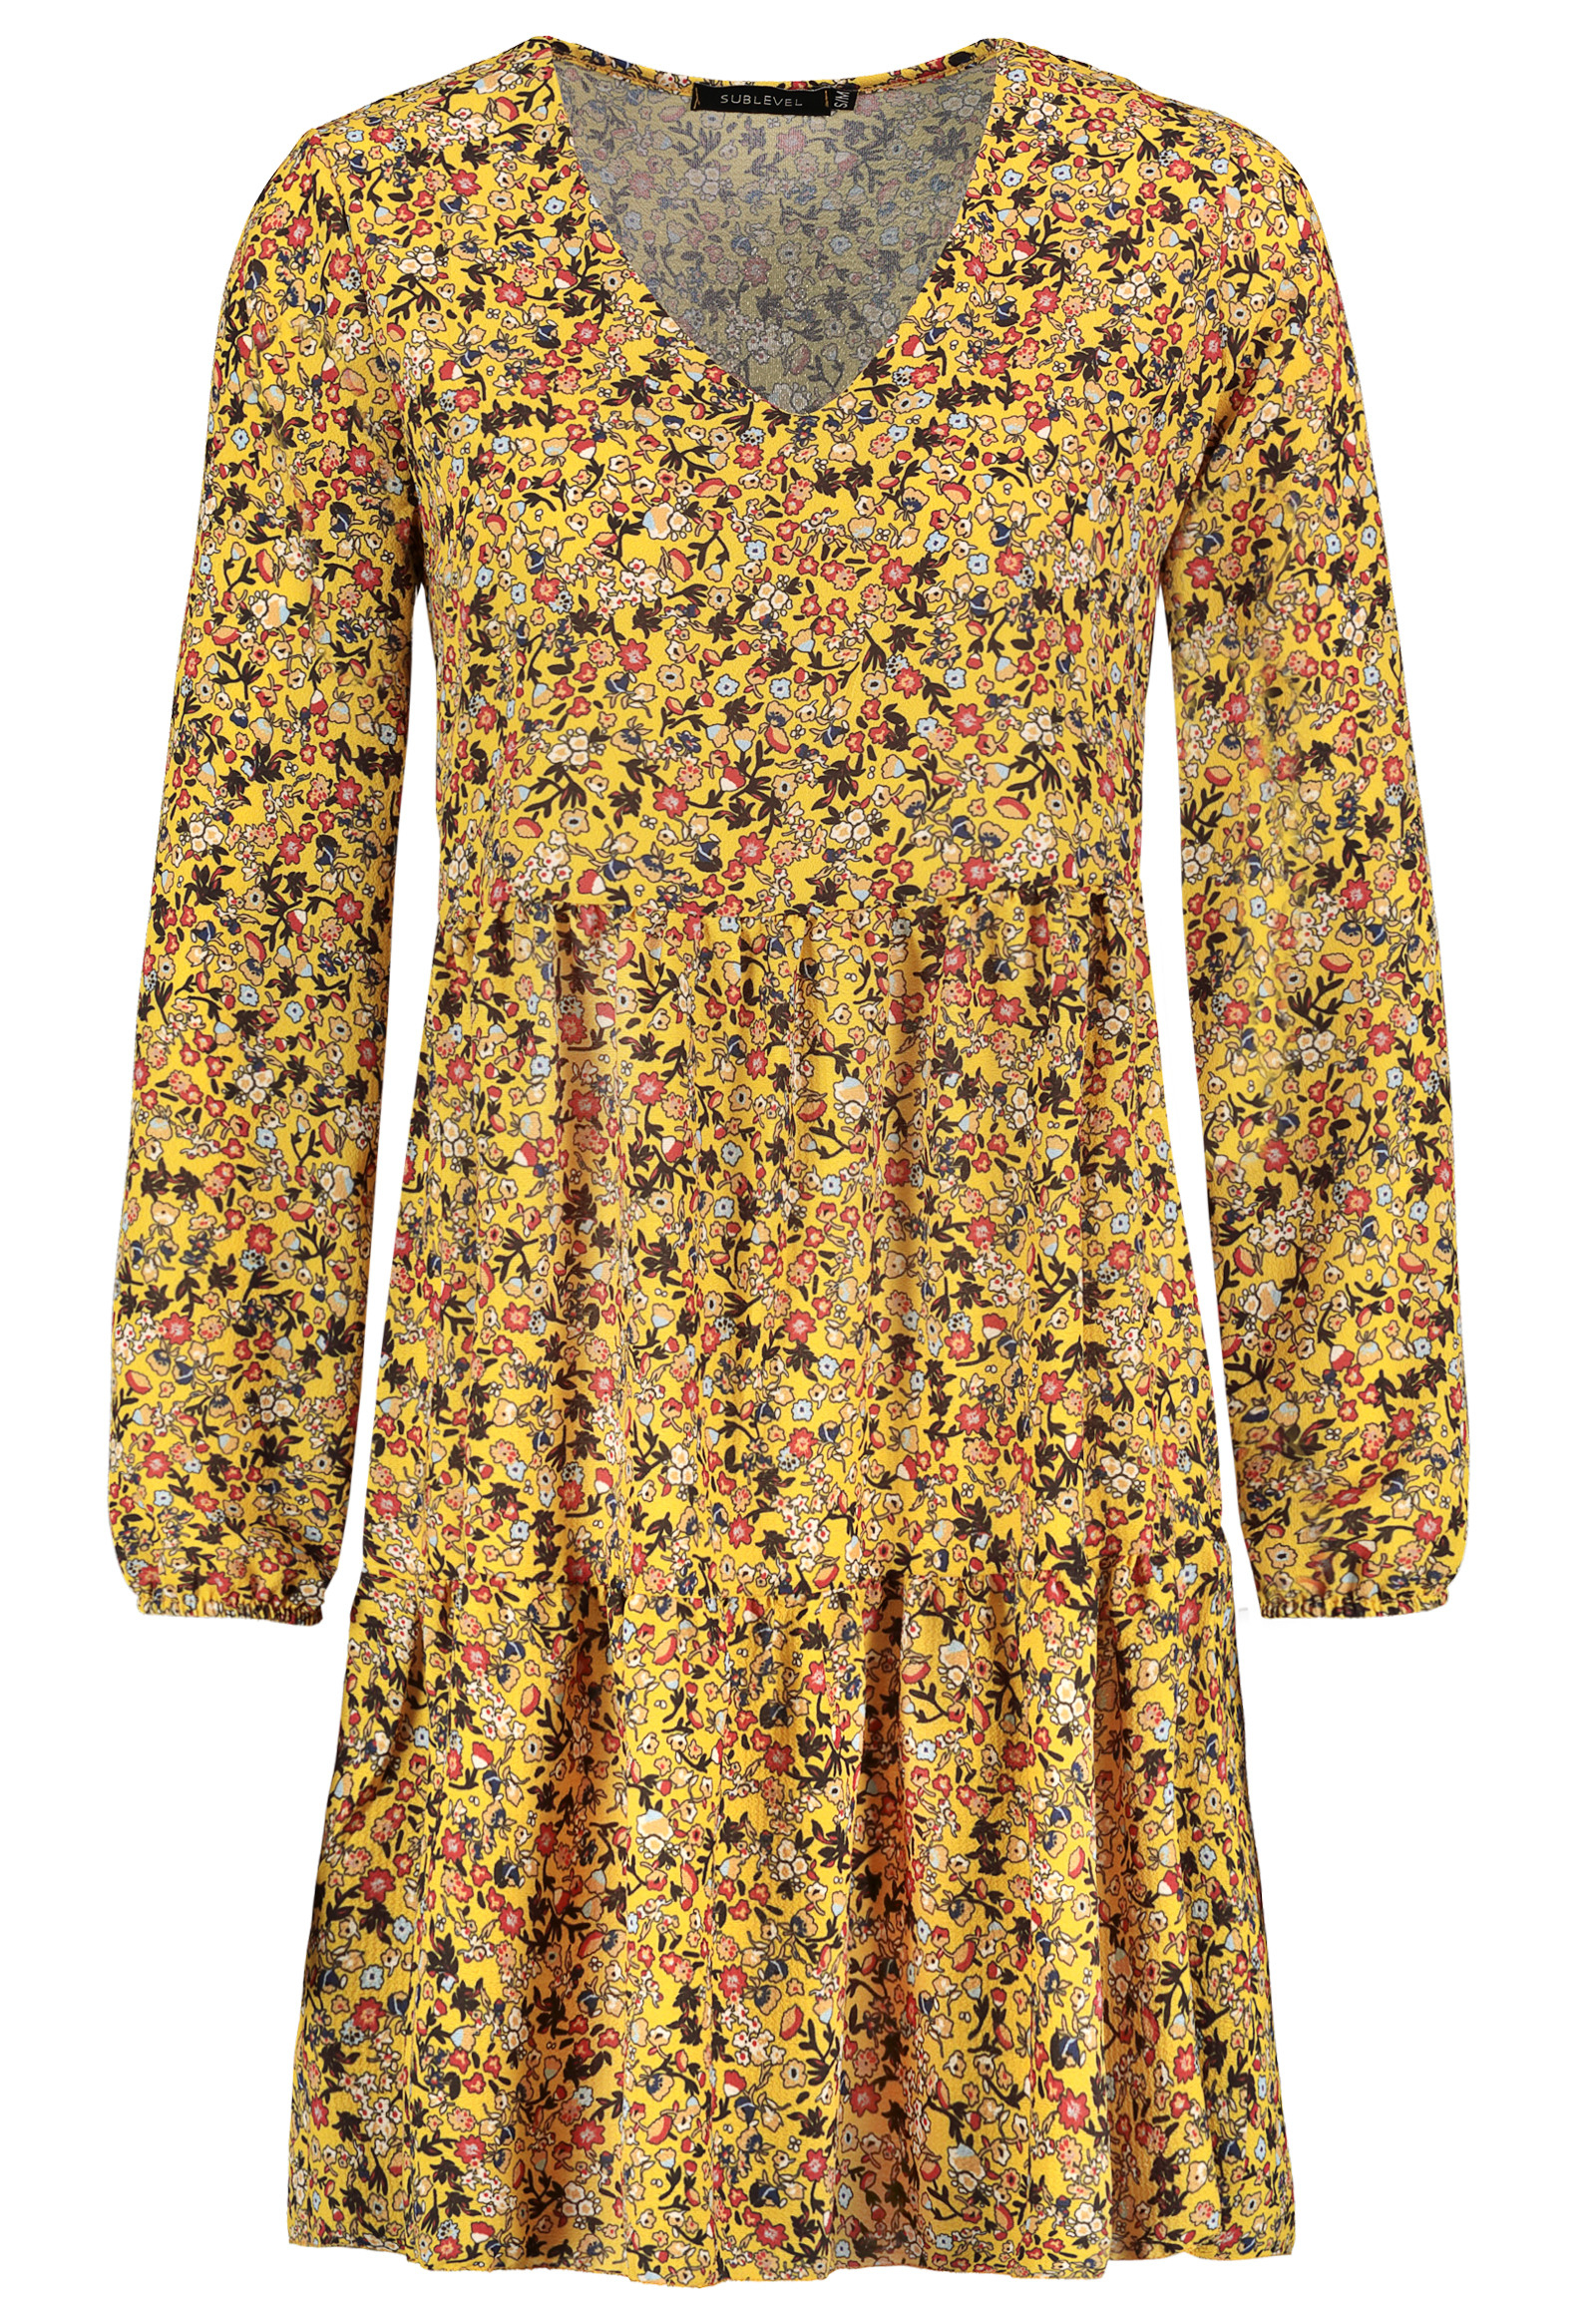 Damen Langarm Kleid Blumen Muster Print Herbst Kleider